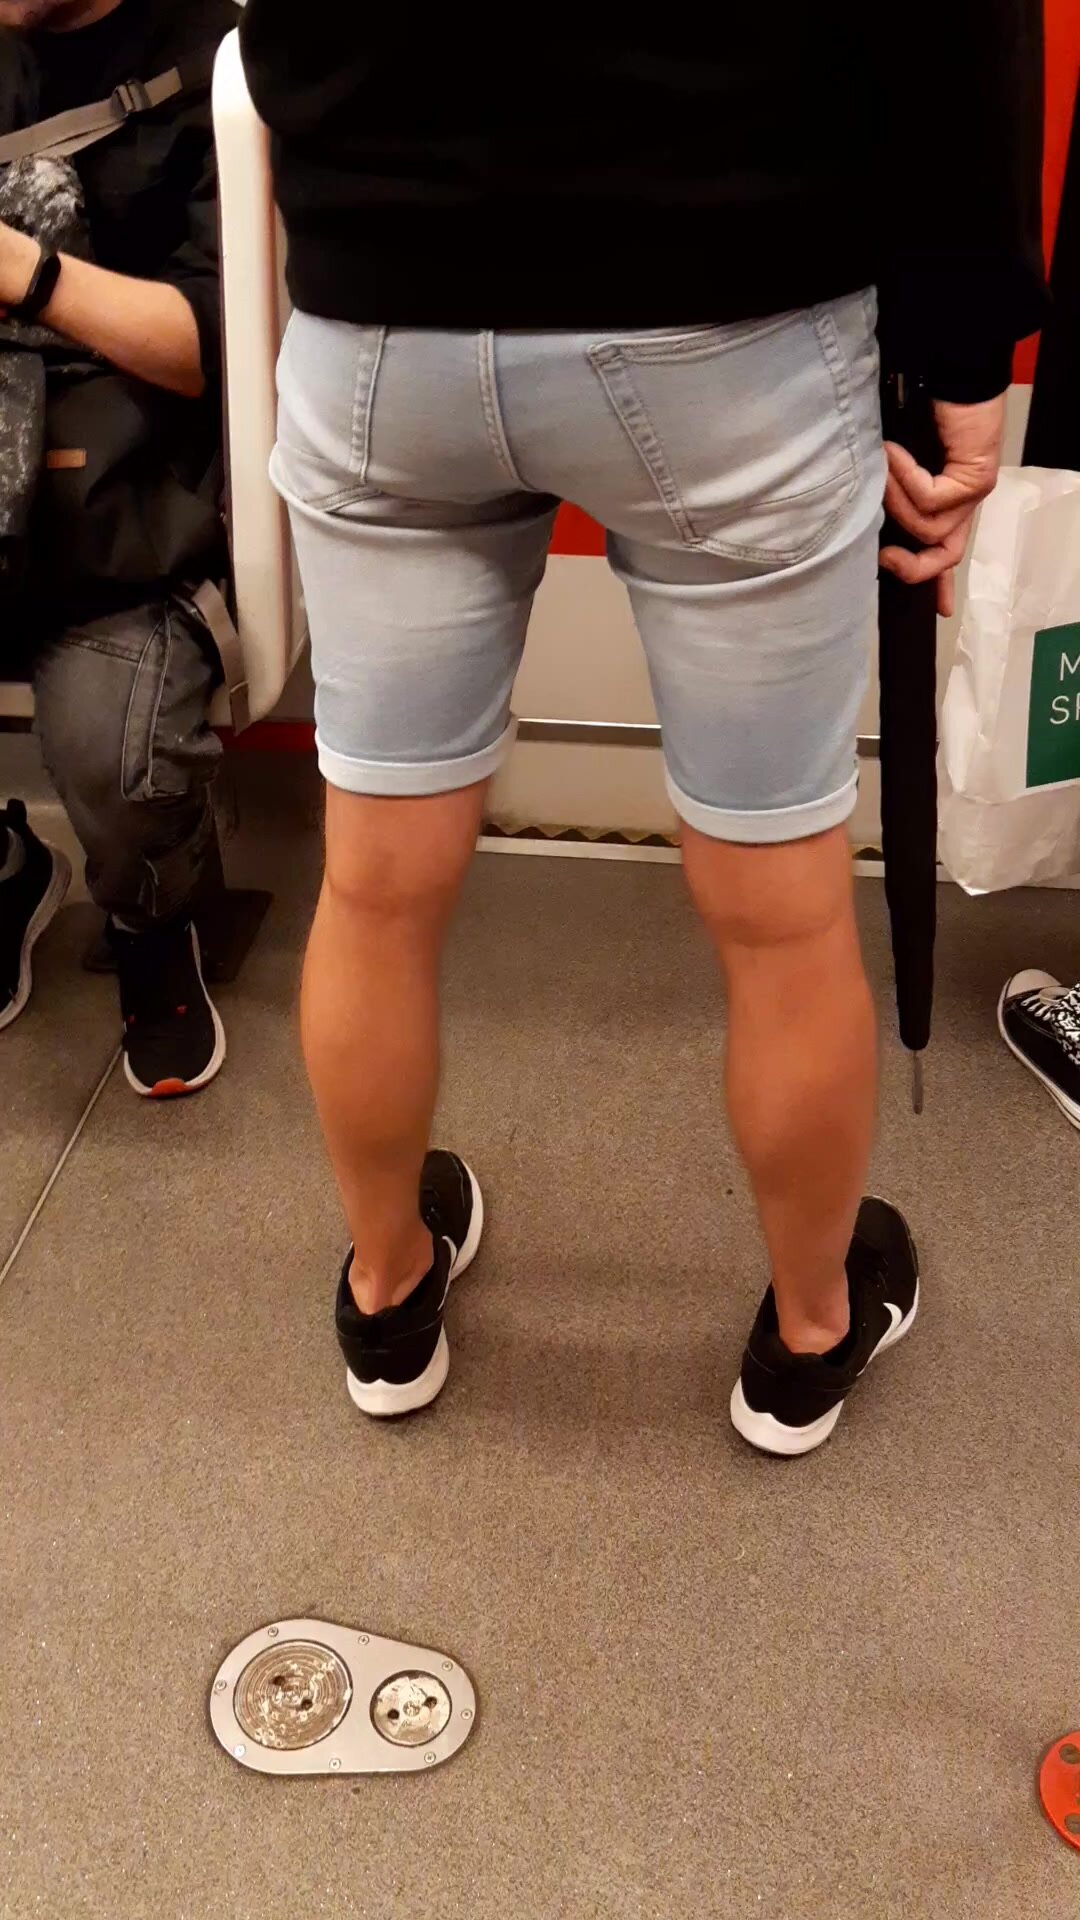 Hot ass and legs